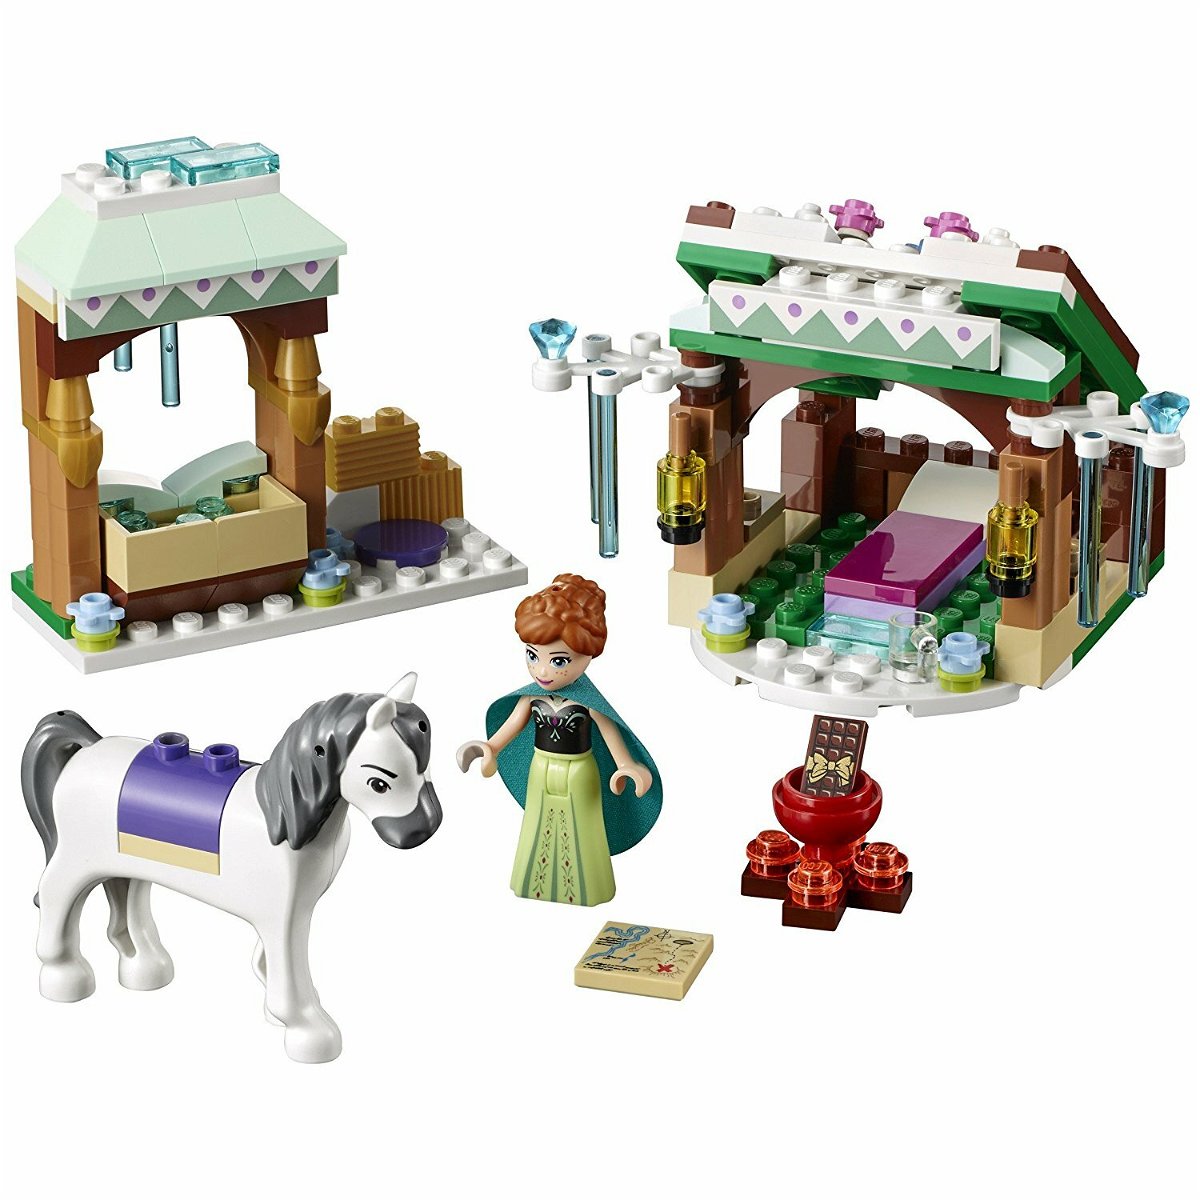 Dettagli del set L'avventura sulla neve di Anna di LEGO